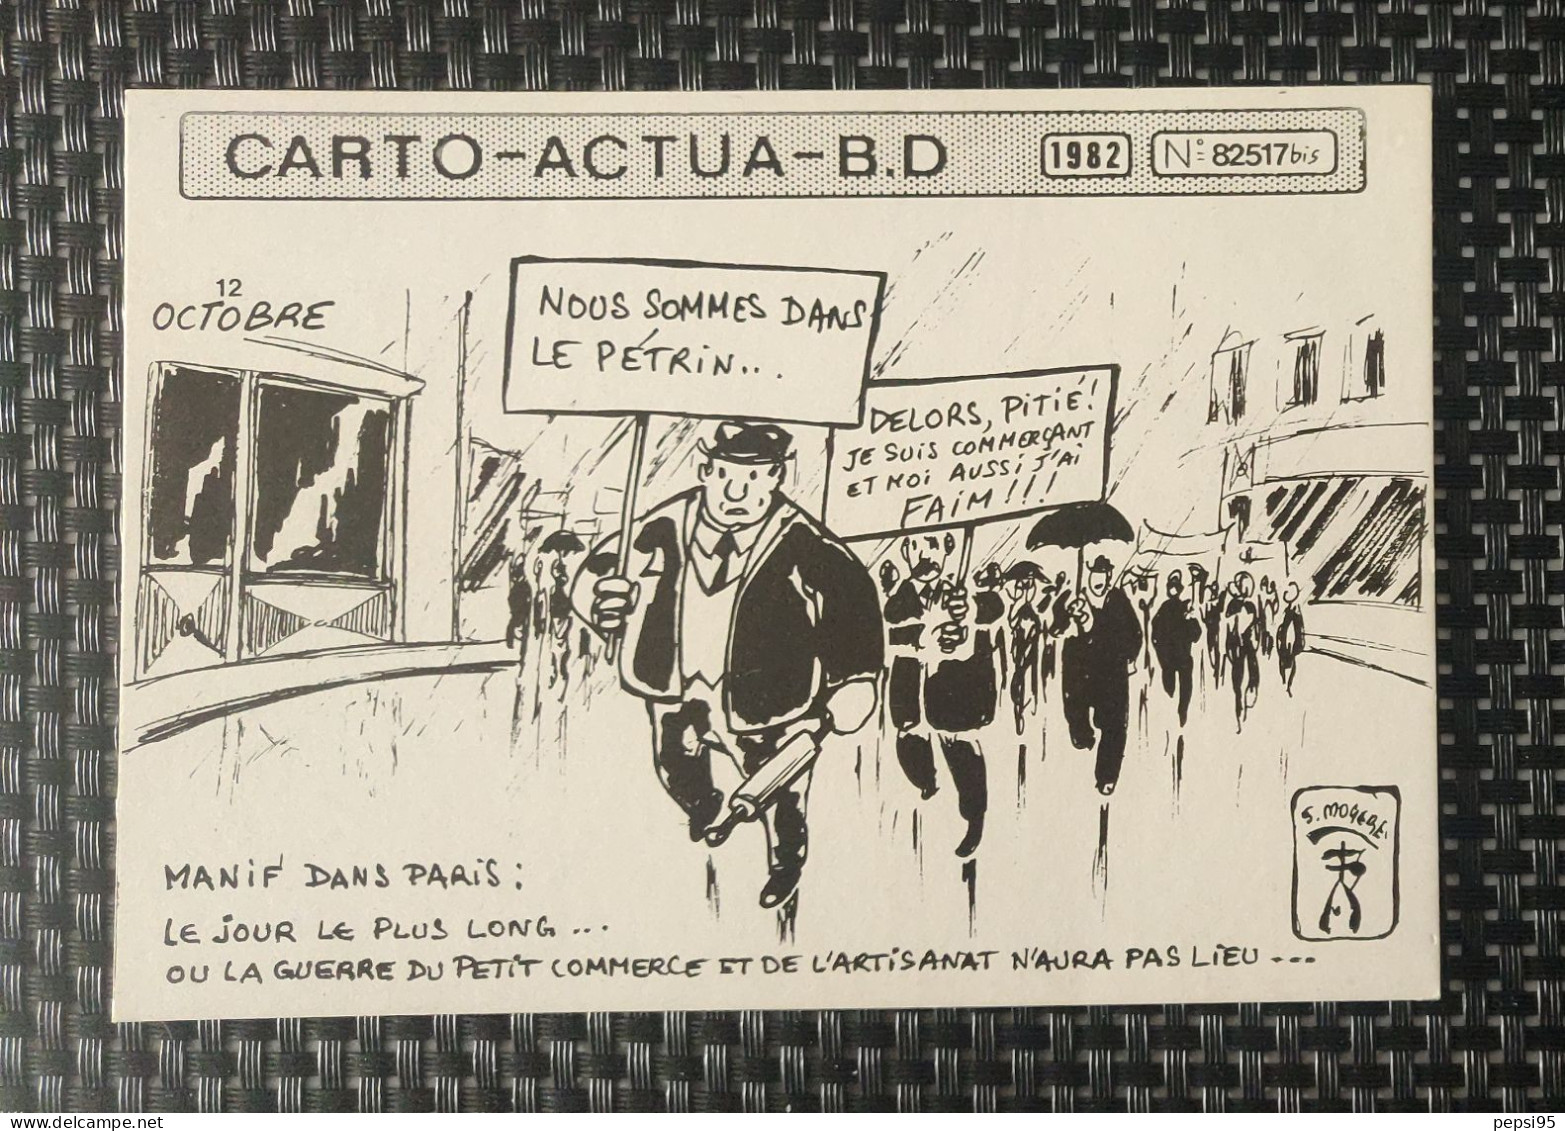 (CPI03) Carte Postale CARTO ACTUA B D N° 82517bis - 1982 - S. MOGERE - Nous Sommes Dans Le Pétrin - Bandes Dessinées